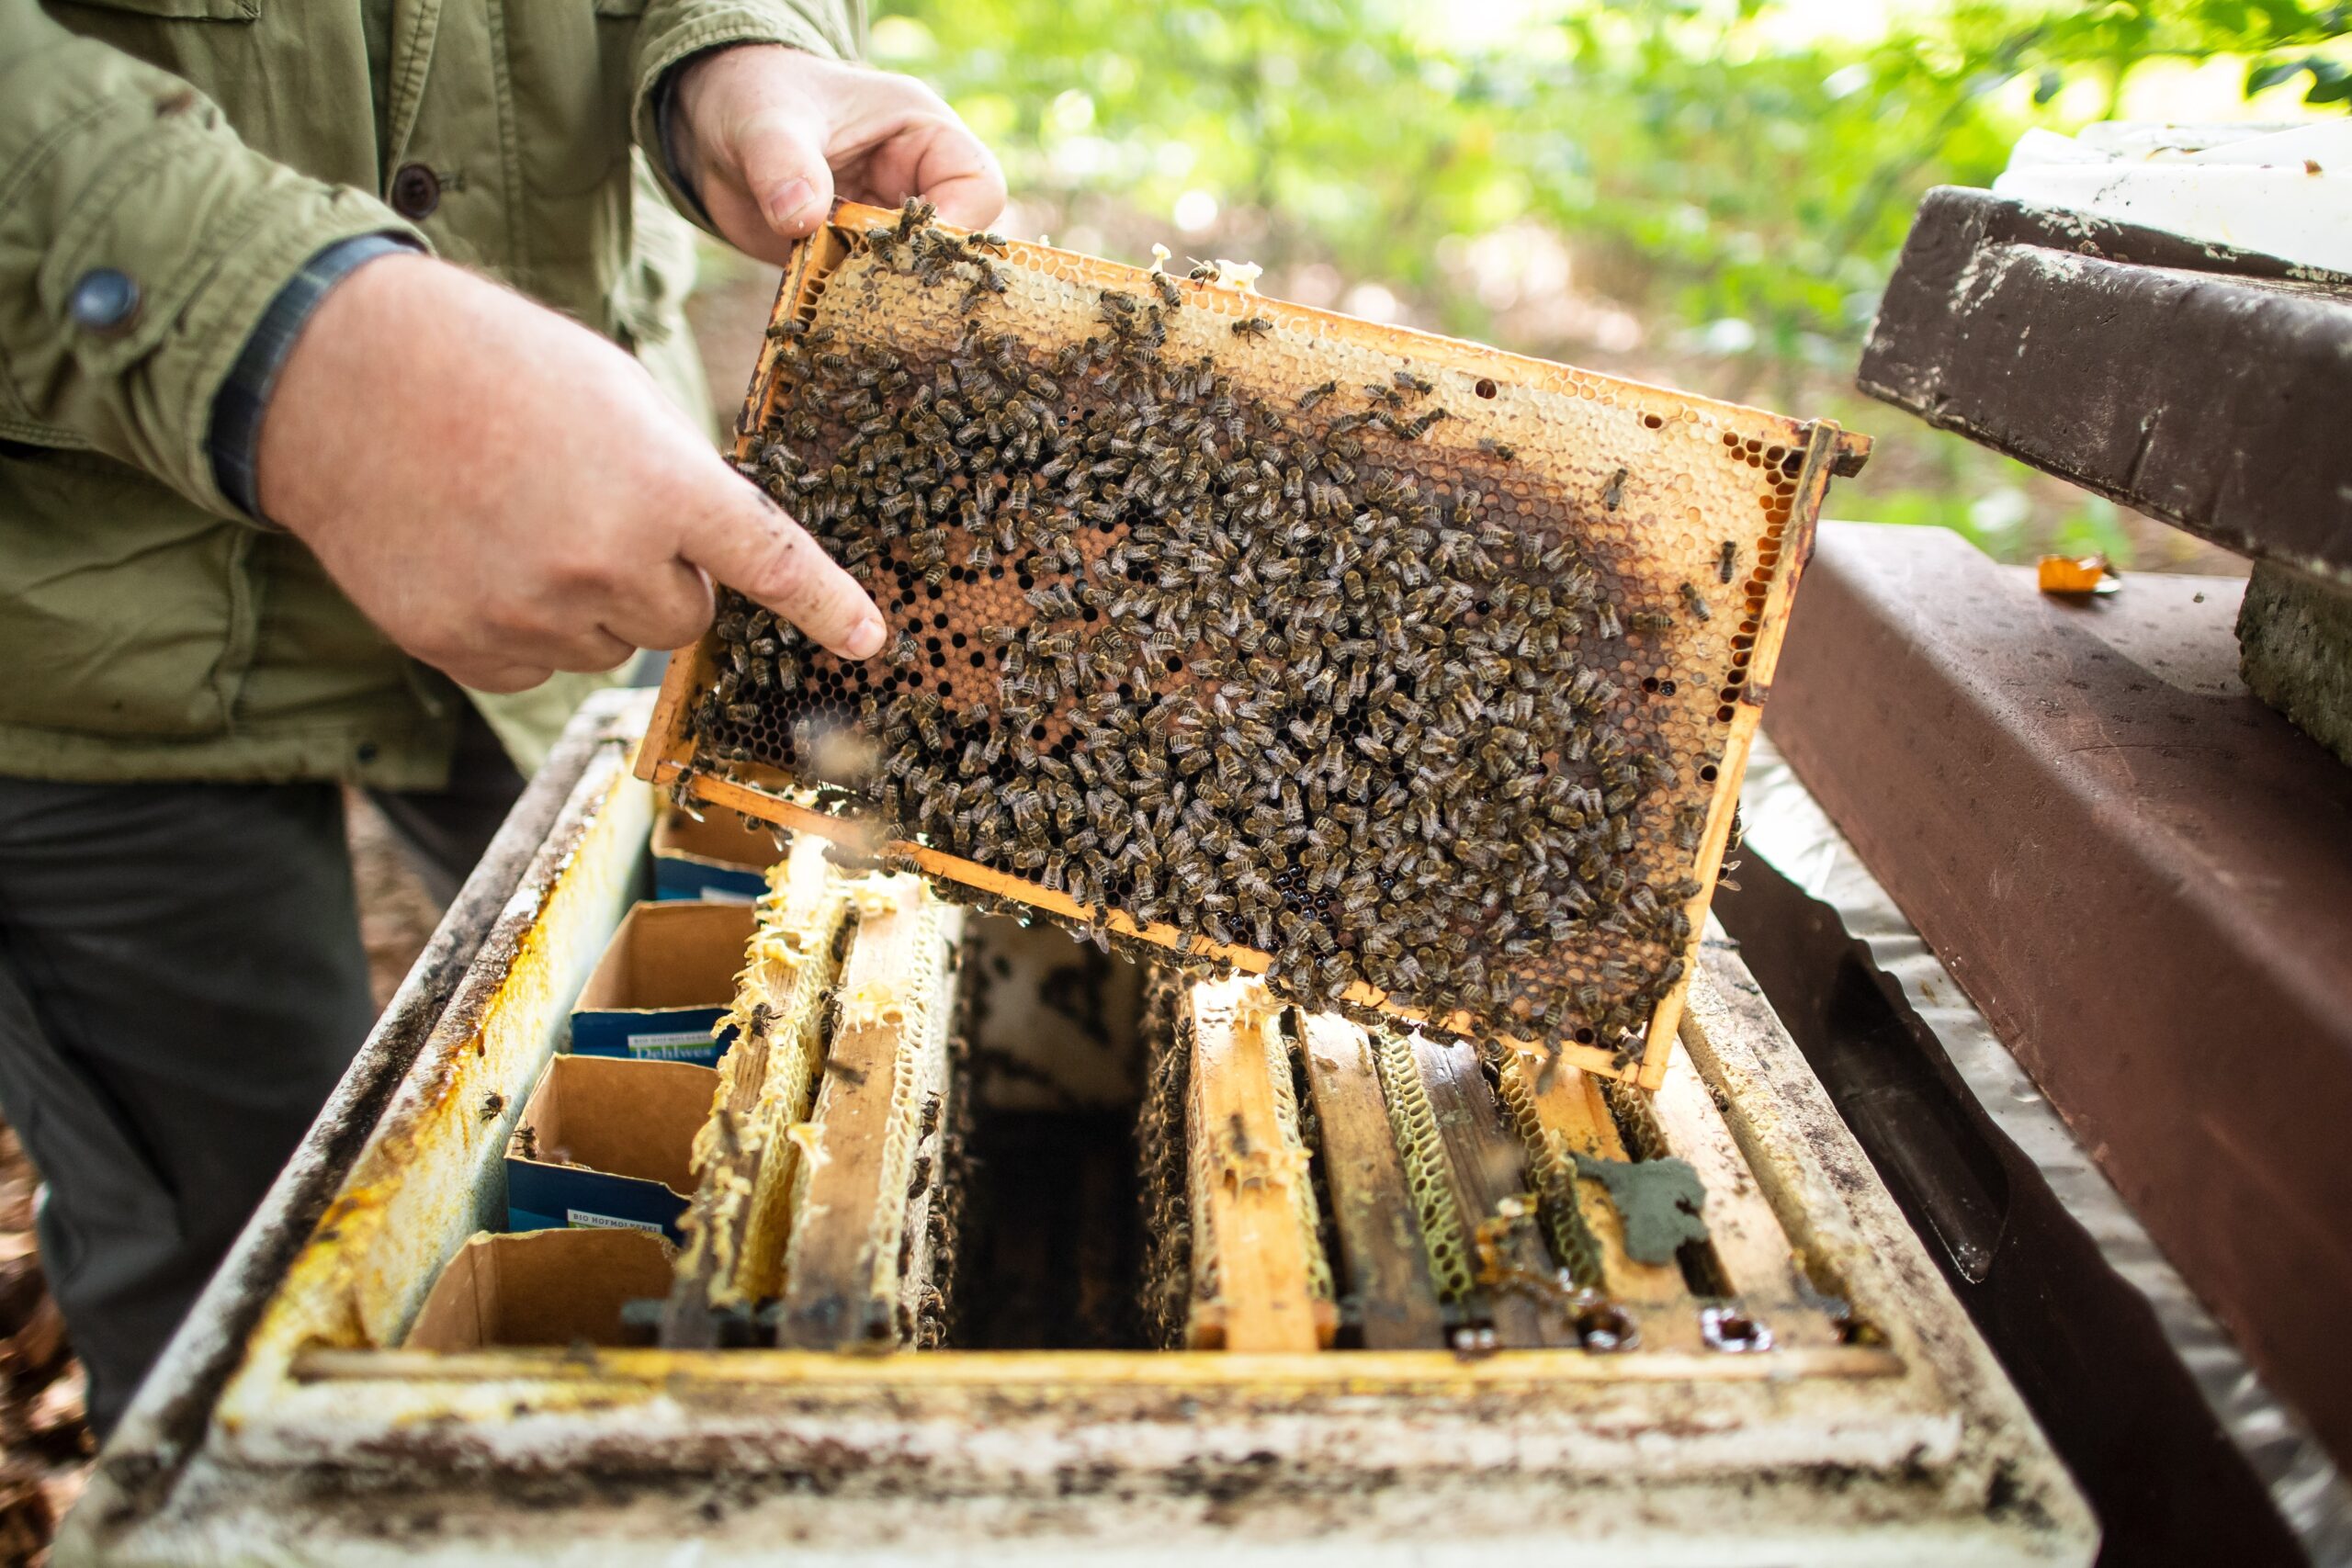 Imker mit Bienenvolk